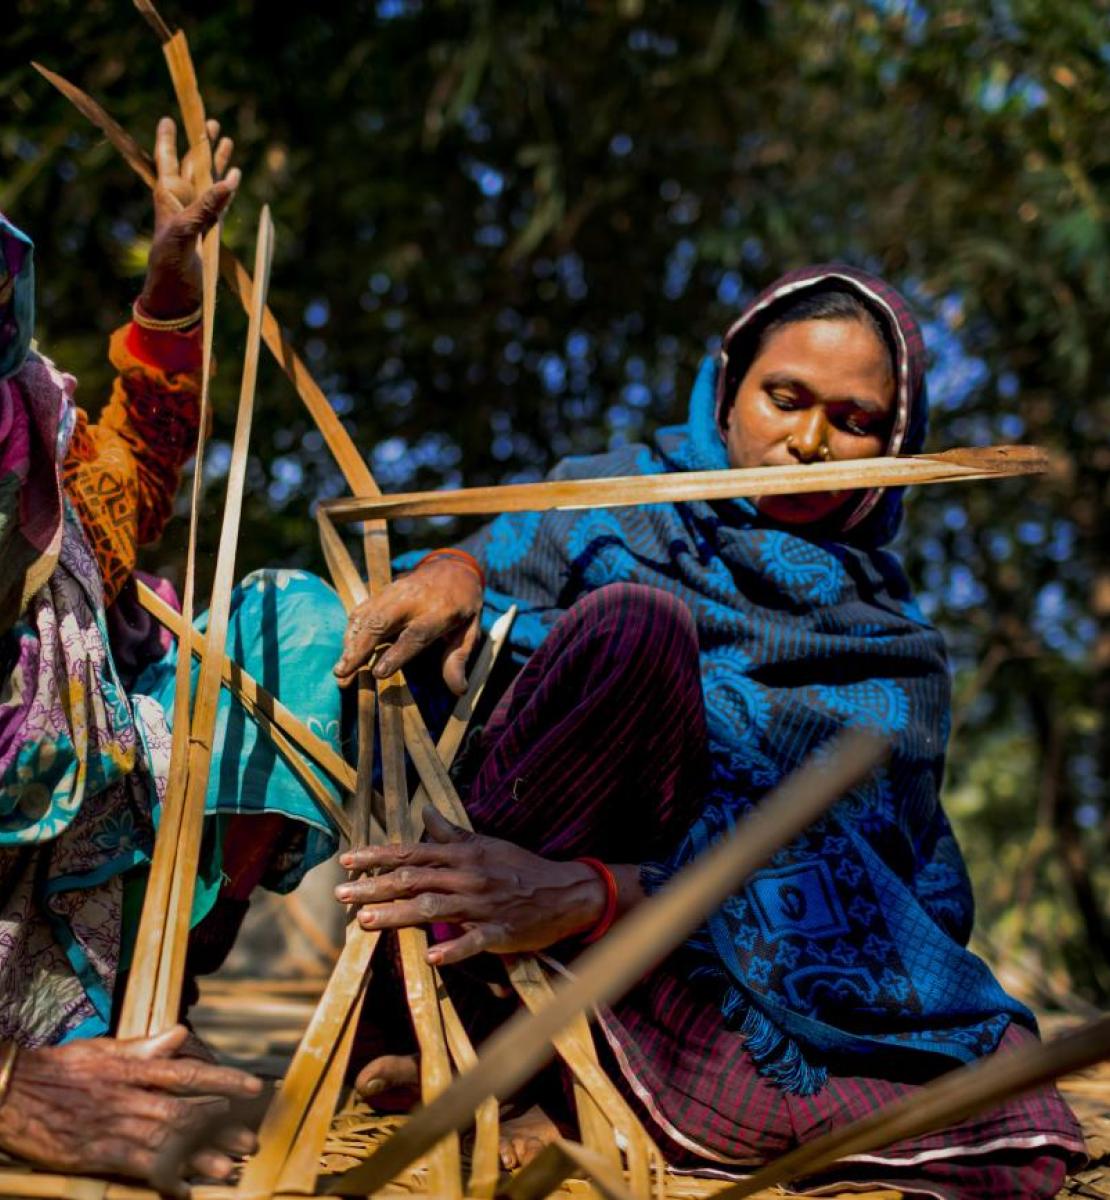 Mujeres con pañuelos de colores trabajan la madera en Bangladesh.